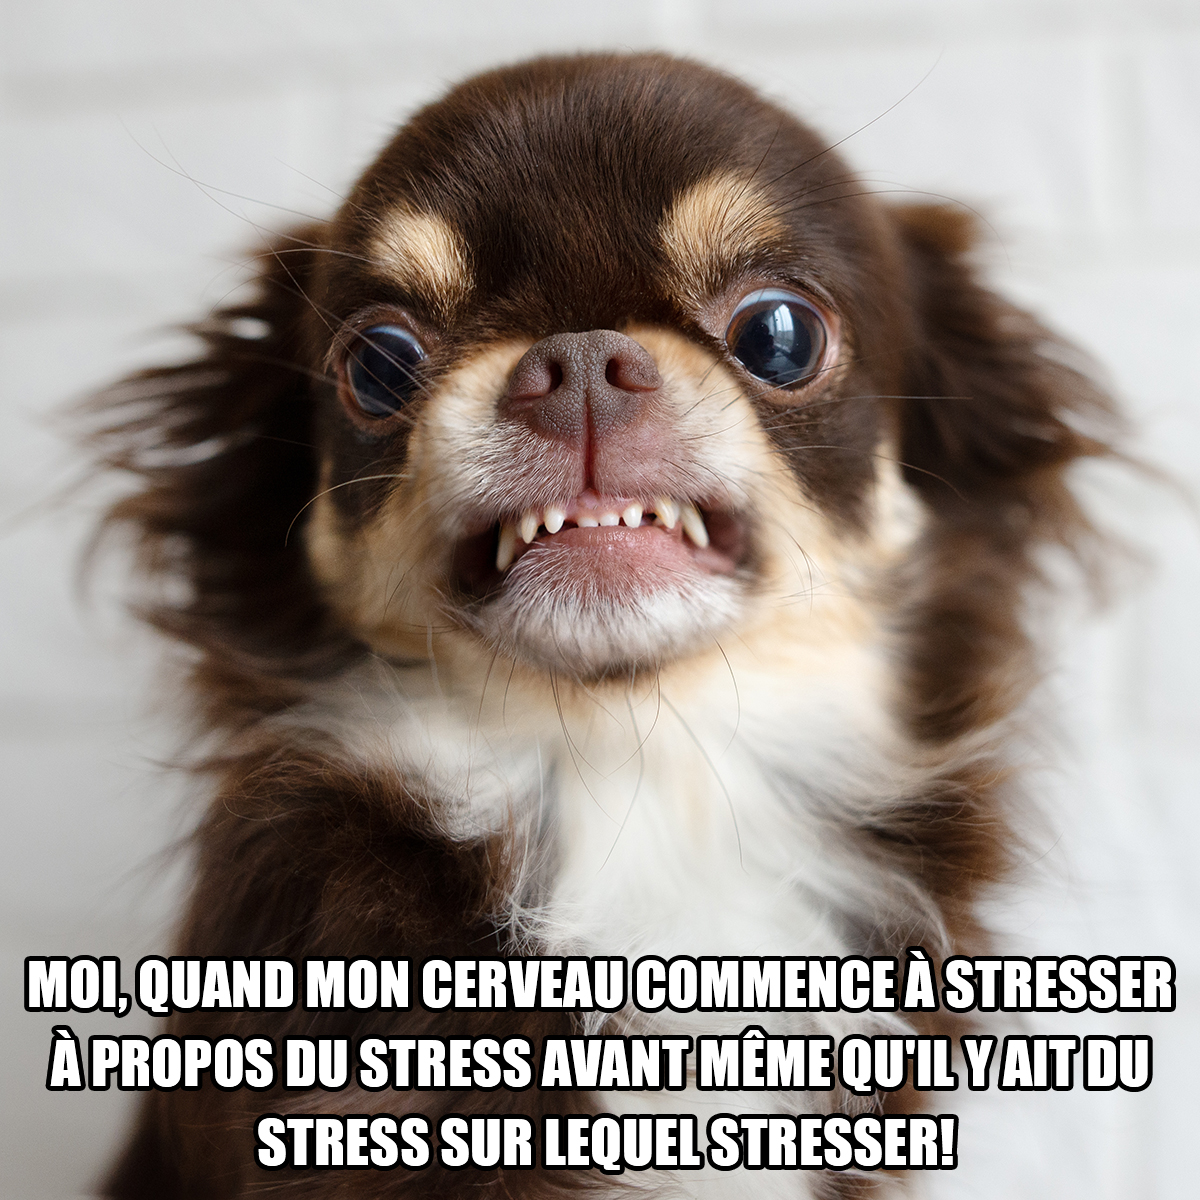 Meme représentant un petit chien qui a l’air stupéfait. Son regard prononcé et ses petites dents acérées indiquent qu’il semble particulièrement stressé. La phrase suivante est inscrite sous l’image de l’animal : Moi, quand mon cerveau commence à stresser à propos du stress avant même qu’il y ait du stress sur lequel stresser! 